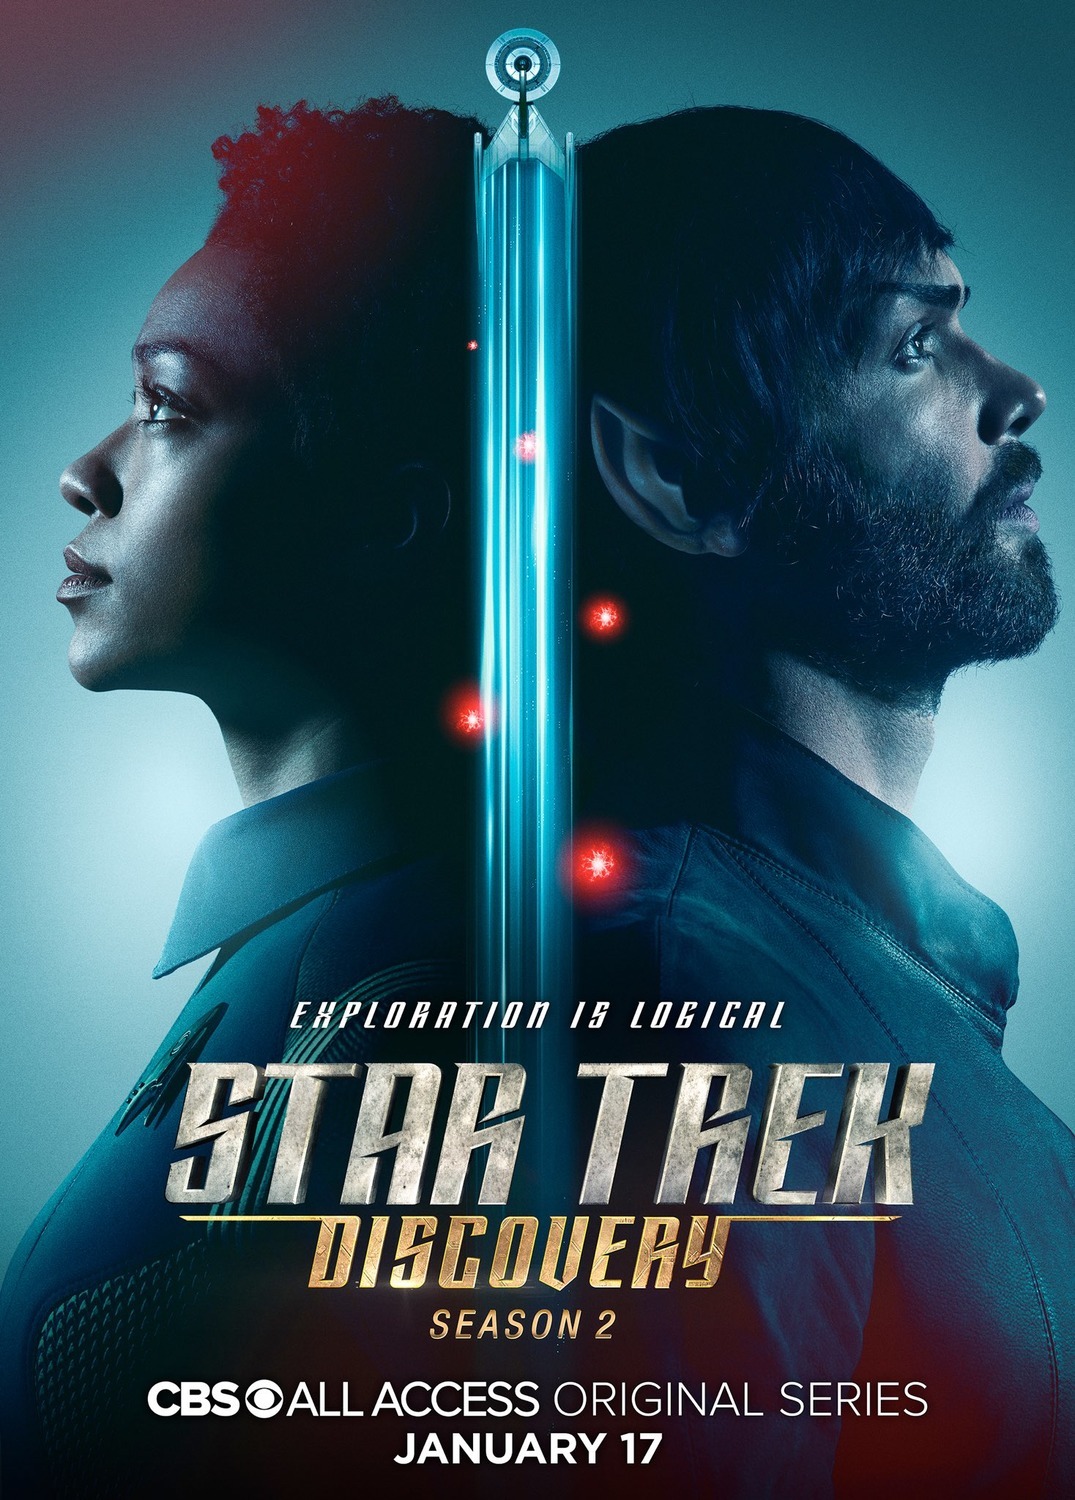 ดูหนังออนไลน์ Star Trek Discovery Season 2 EP.13 สตาร์ เทรค ดิสคัฟเวอรี่ ซีซั่นที่ 2 ตอนที่ 13